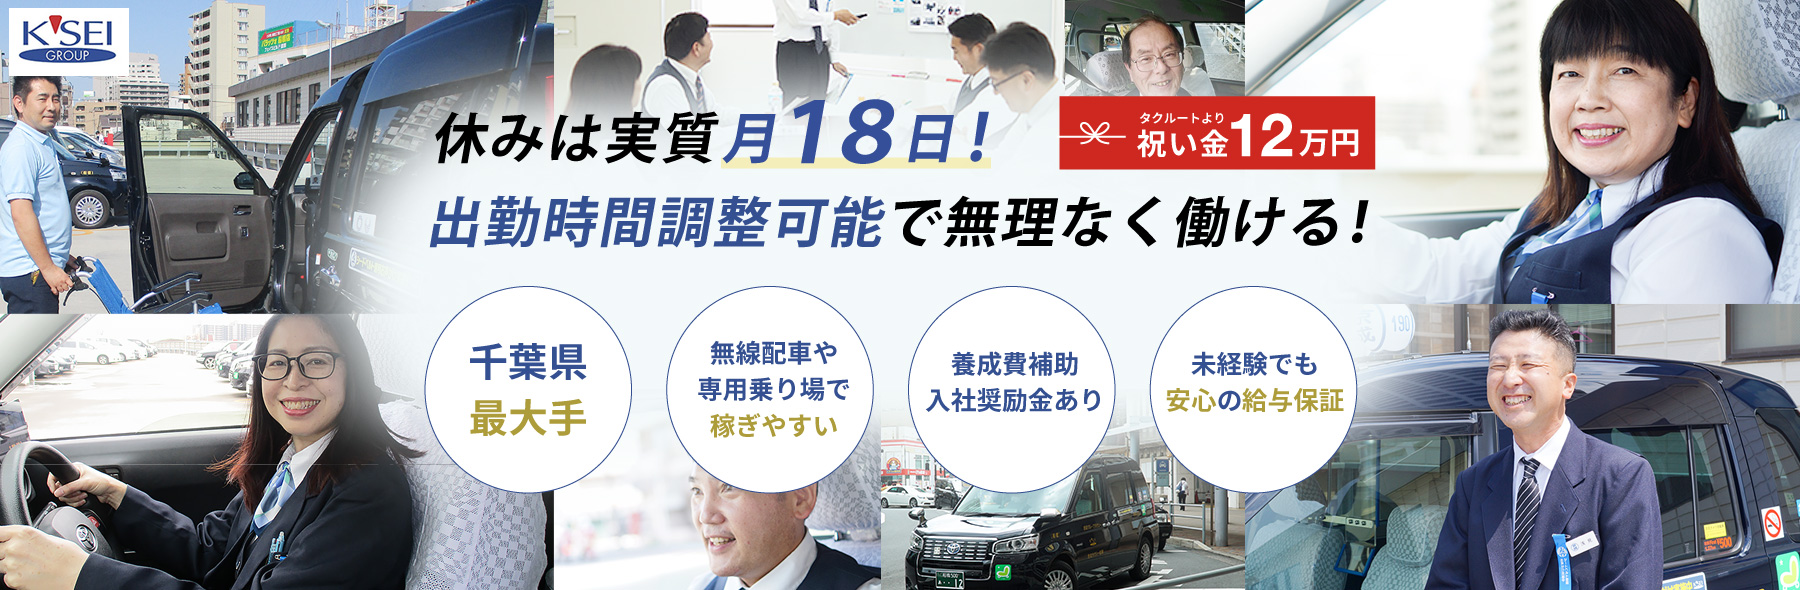 地元に根差した営業で千葉県シェアナンバー1の京成タクシーホールディングスの求人募集要項です